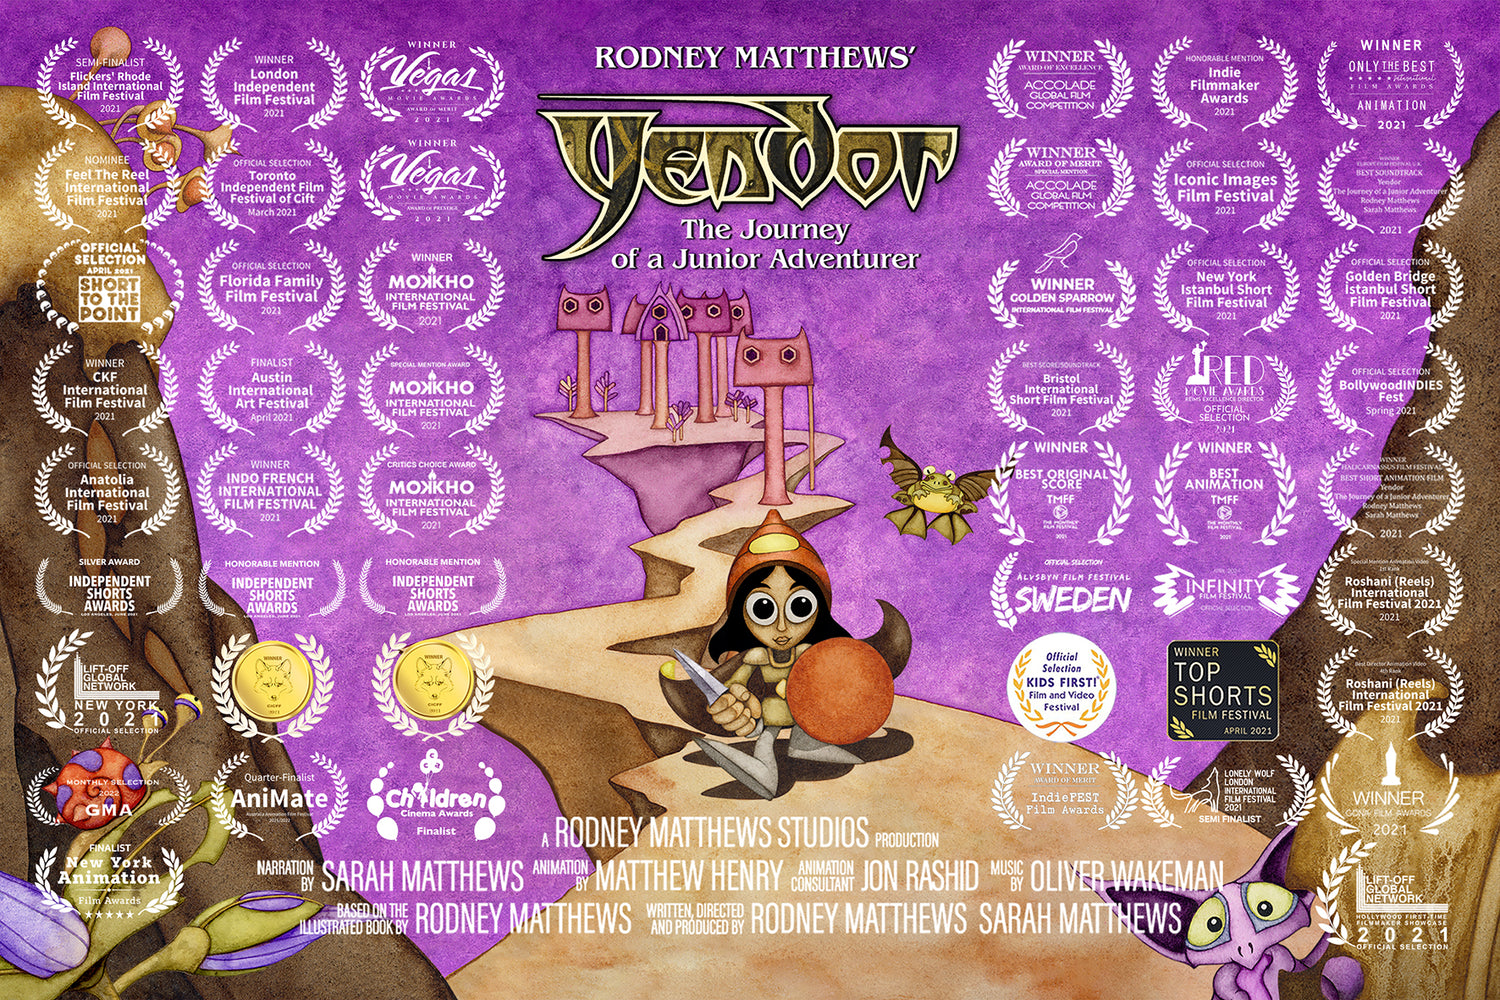 Yendor's Film Festival Wins